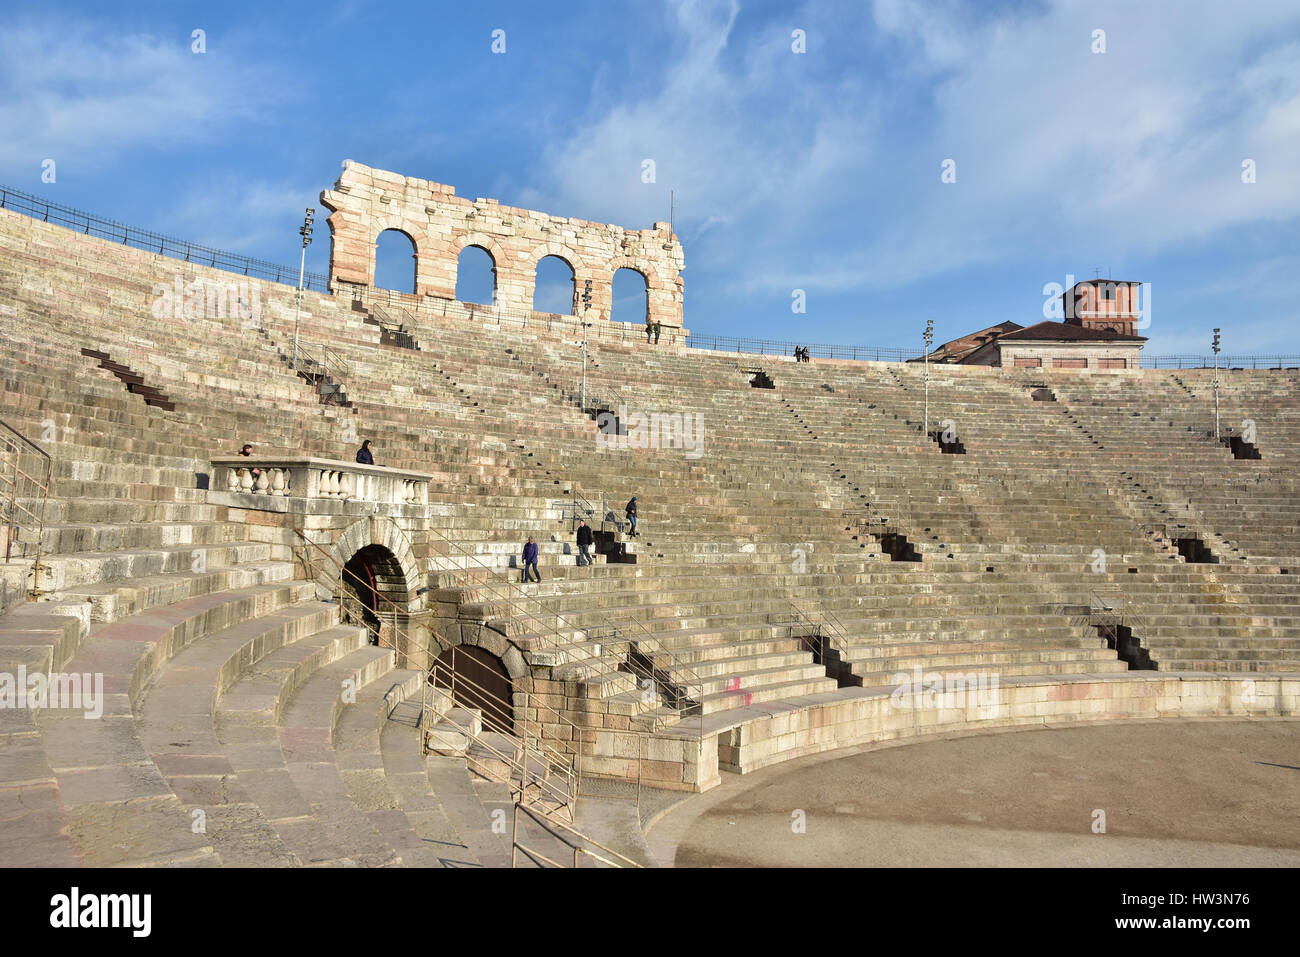 Vista di Arena di Verona cavea, un antico anfiteatro romano ancora in uso Foto Stock